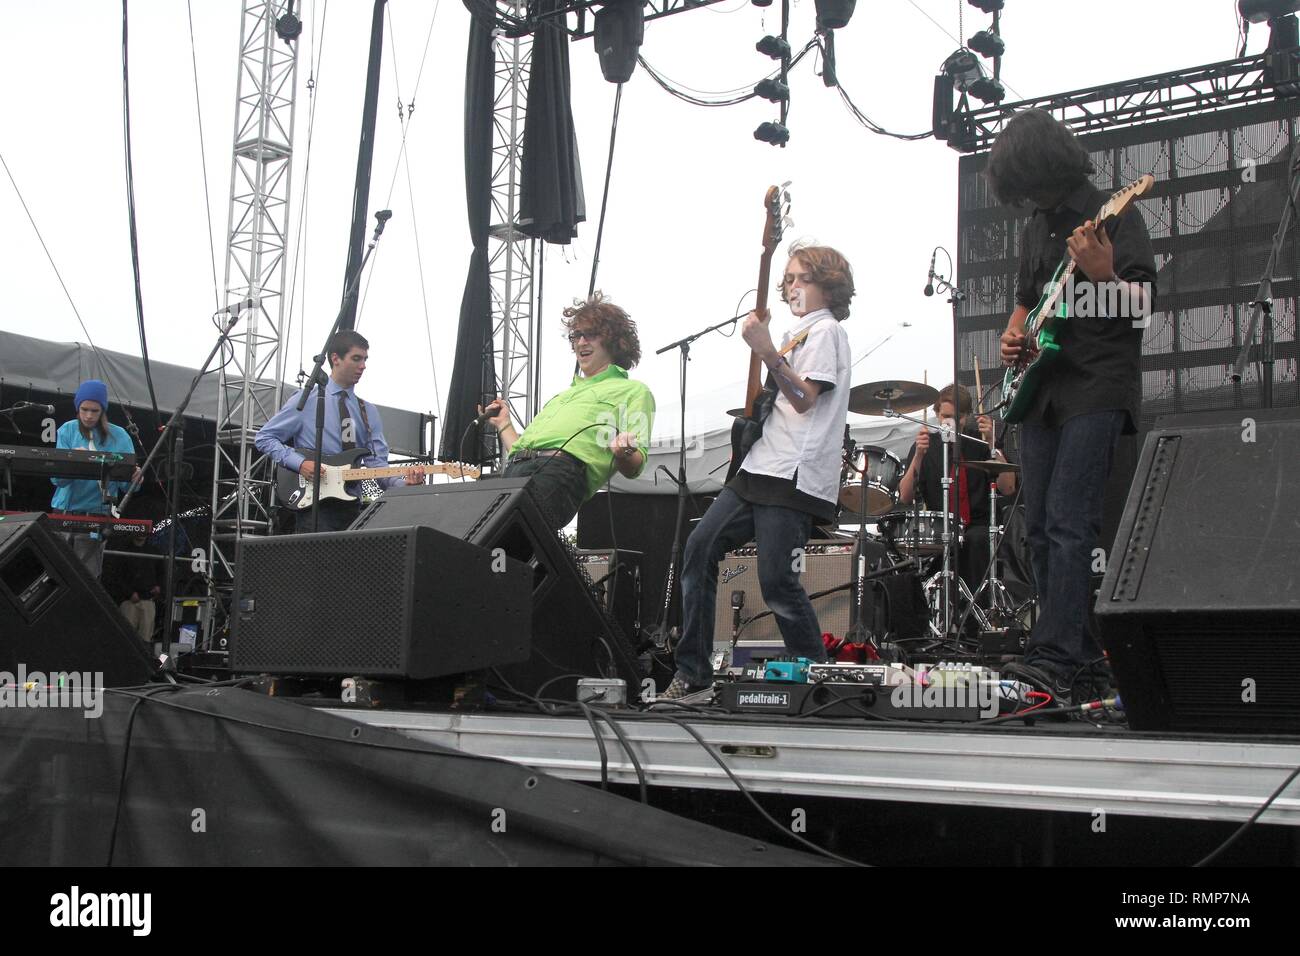 La scuola di roccia Allstars sono mostrati esibirsi sul palco durante un 'live' aspetto di concerto. Foto Stock